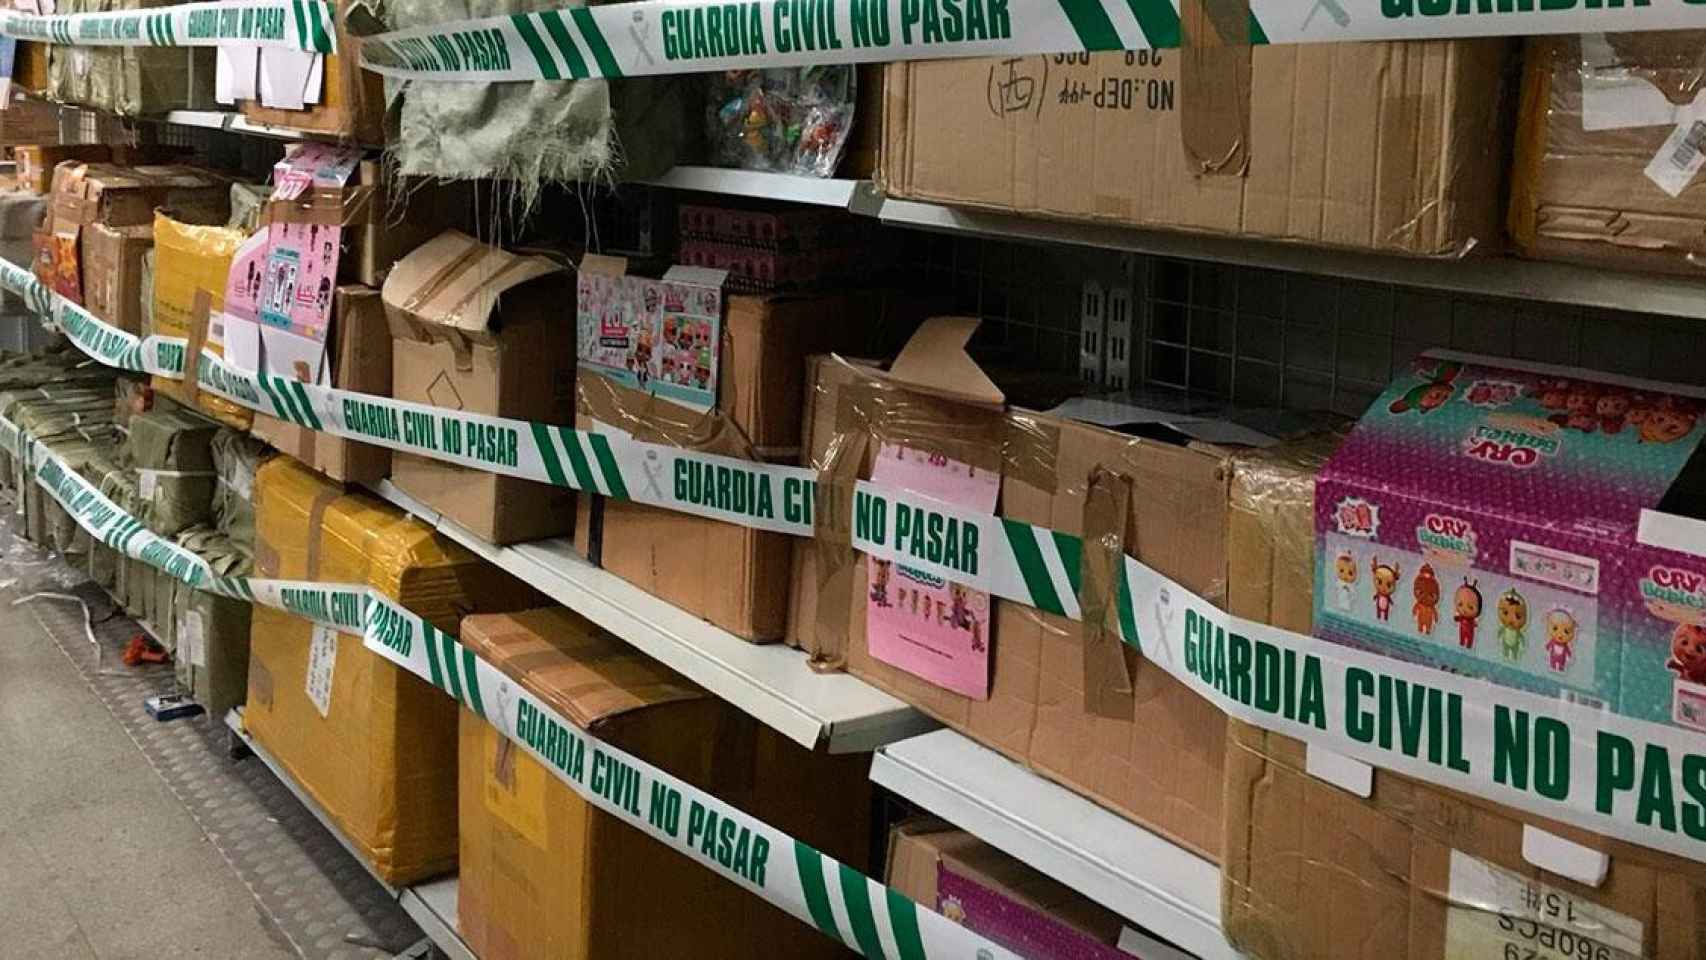 Cajas con falsificaciones incautadas en Badalona / GUARDIA CIVIL